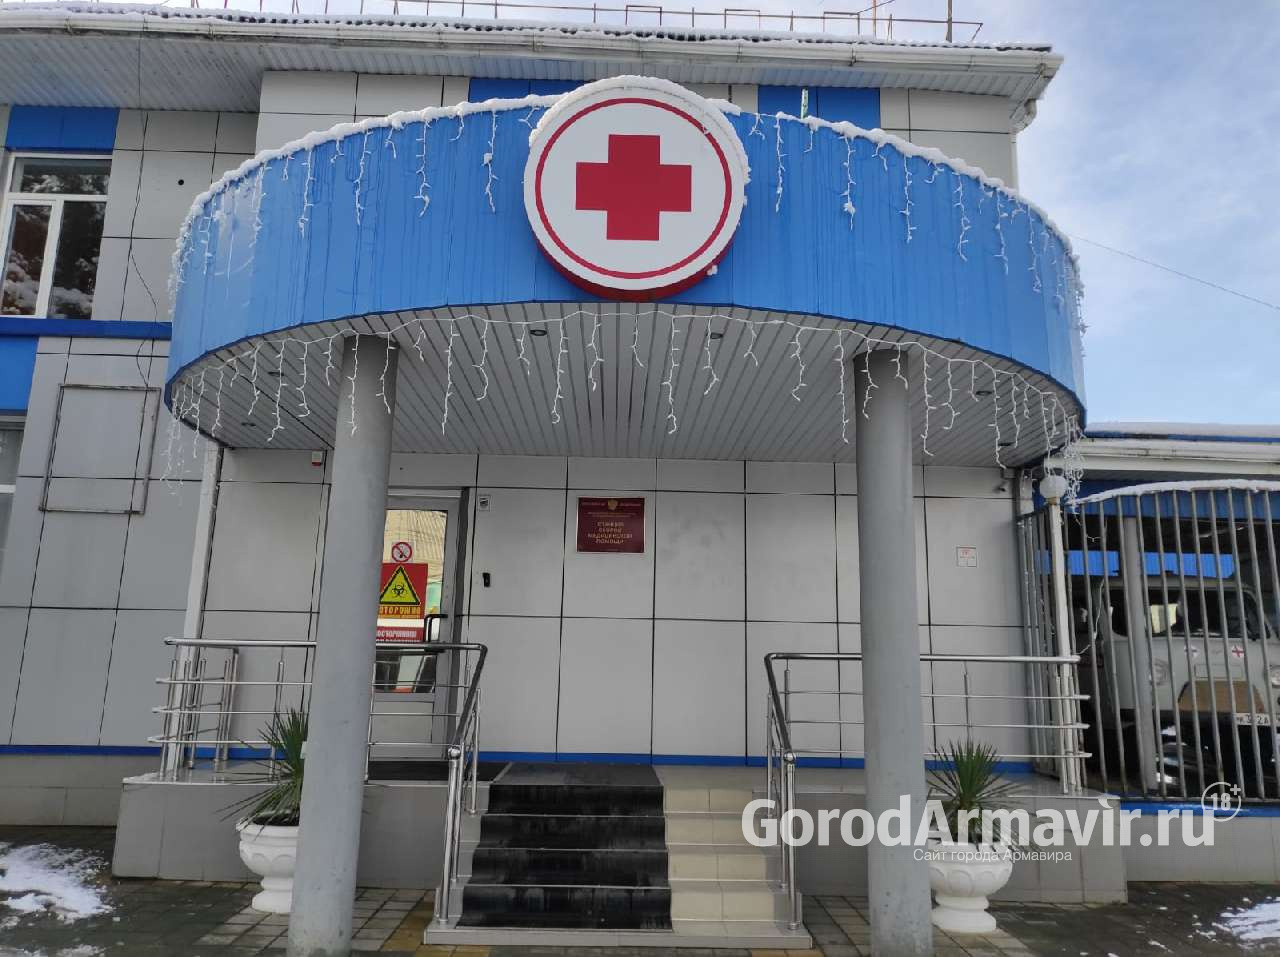 Коронавирус Армавир 3 февраля: в городе зарегистрировано 33 новых пациента 